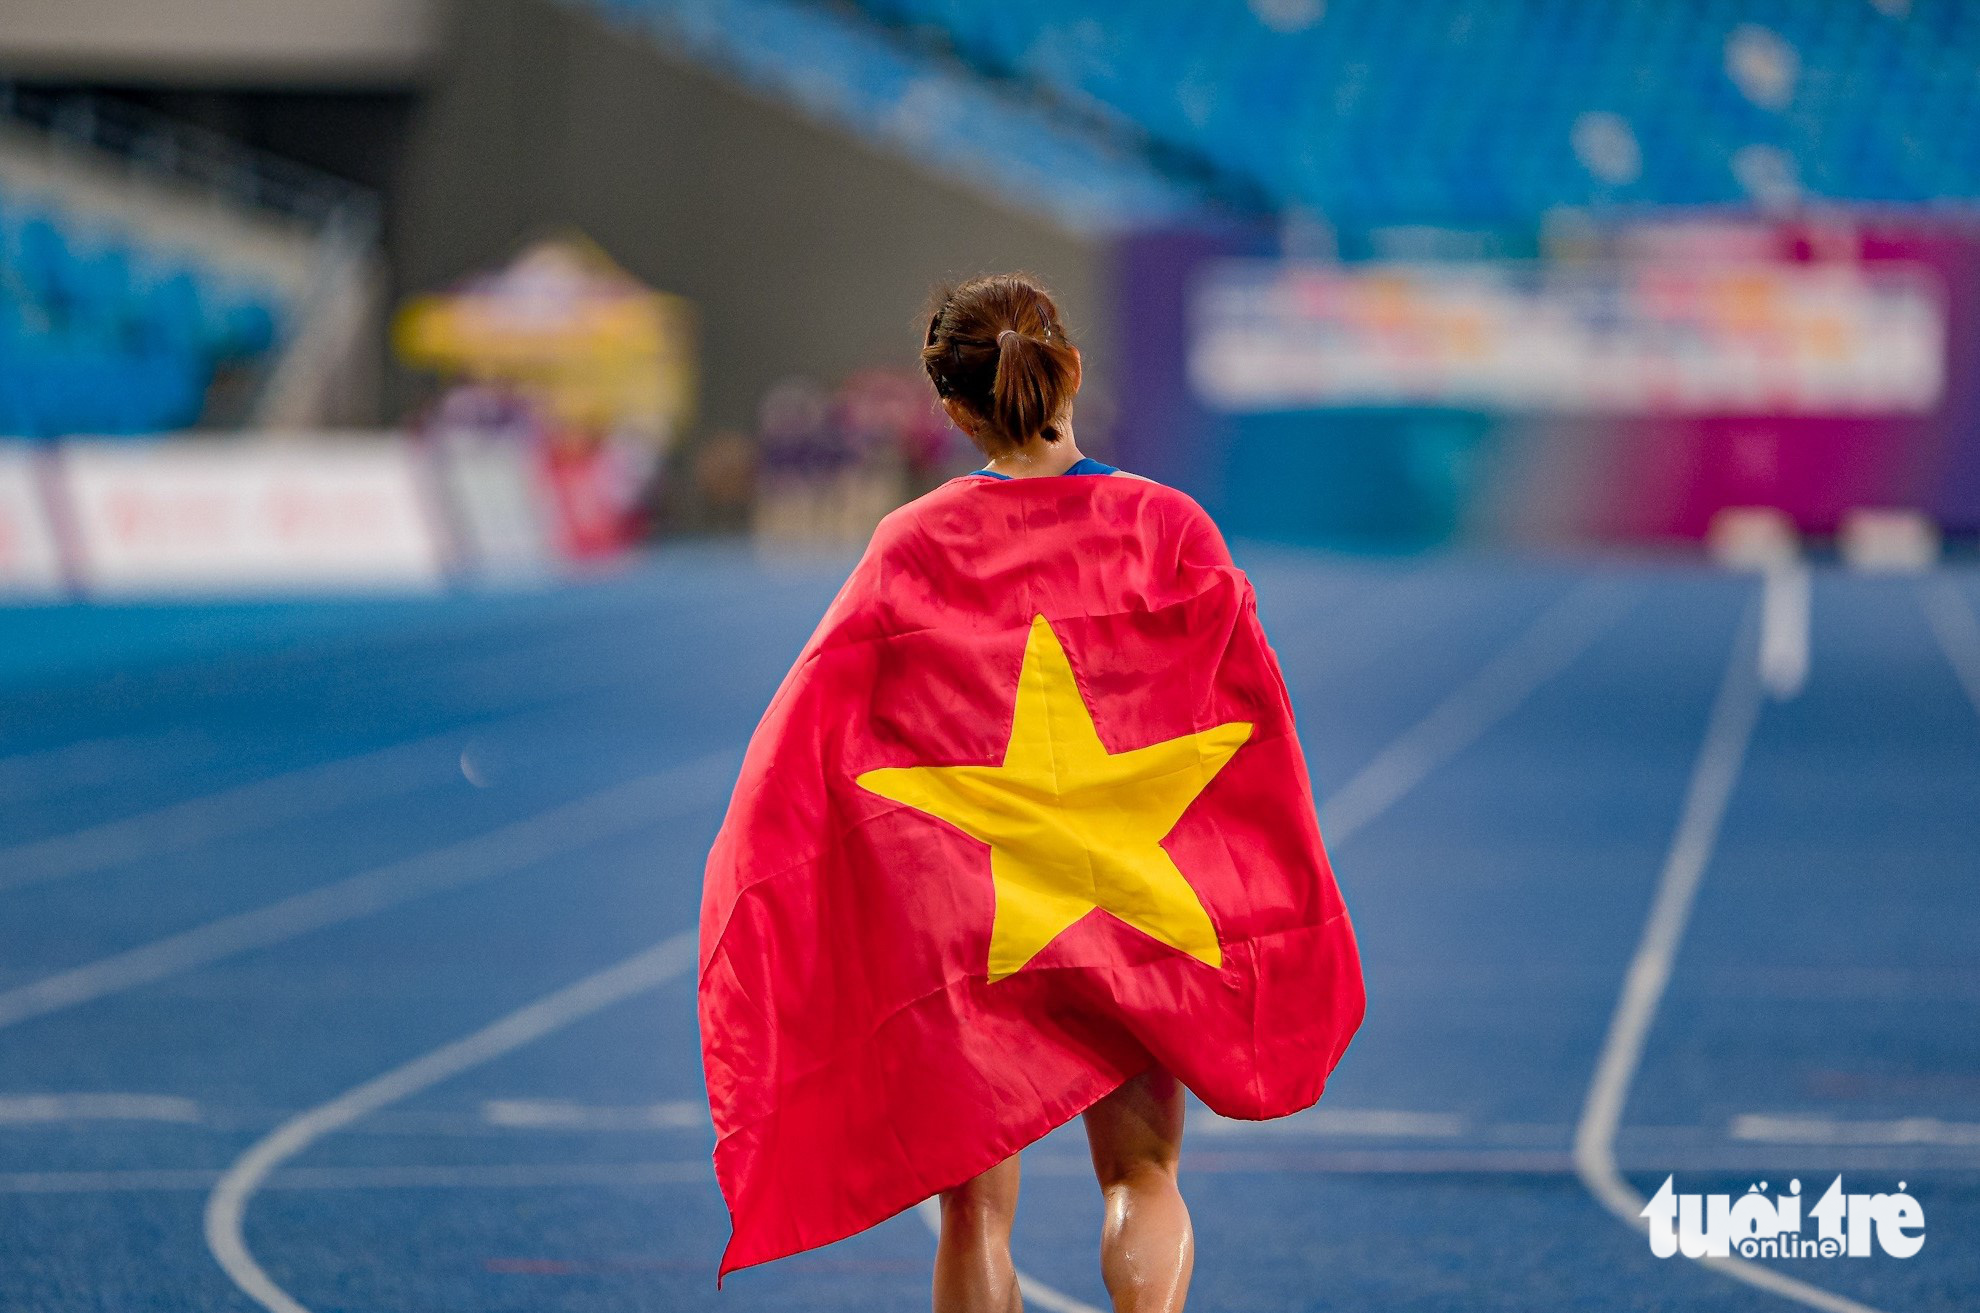 Chùm ảnh Nguyễn Thị Oanh lập kỳ tích SEA Games khi giành 2 HCV trong 30 phút - Ảnh 11.